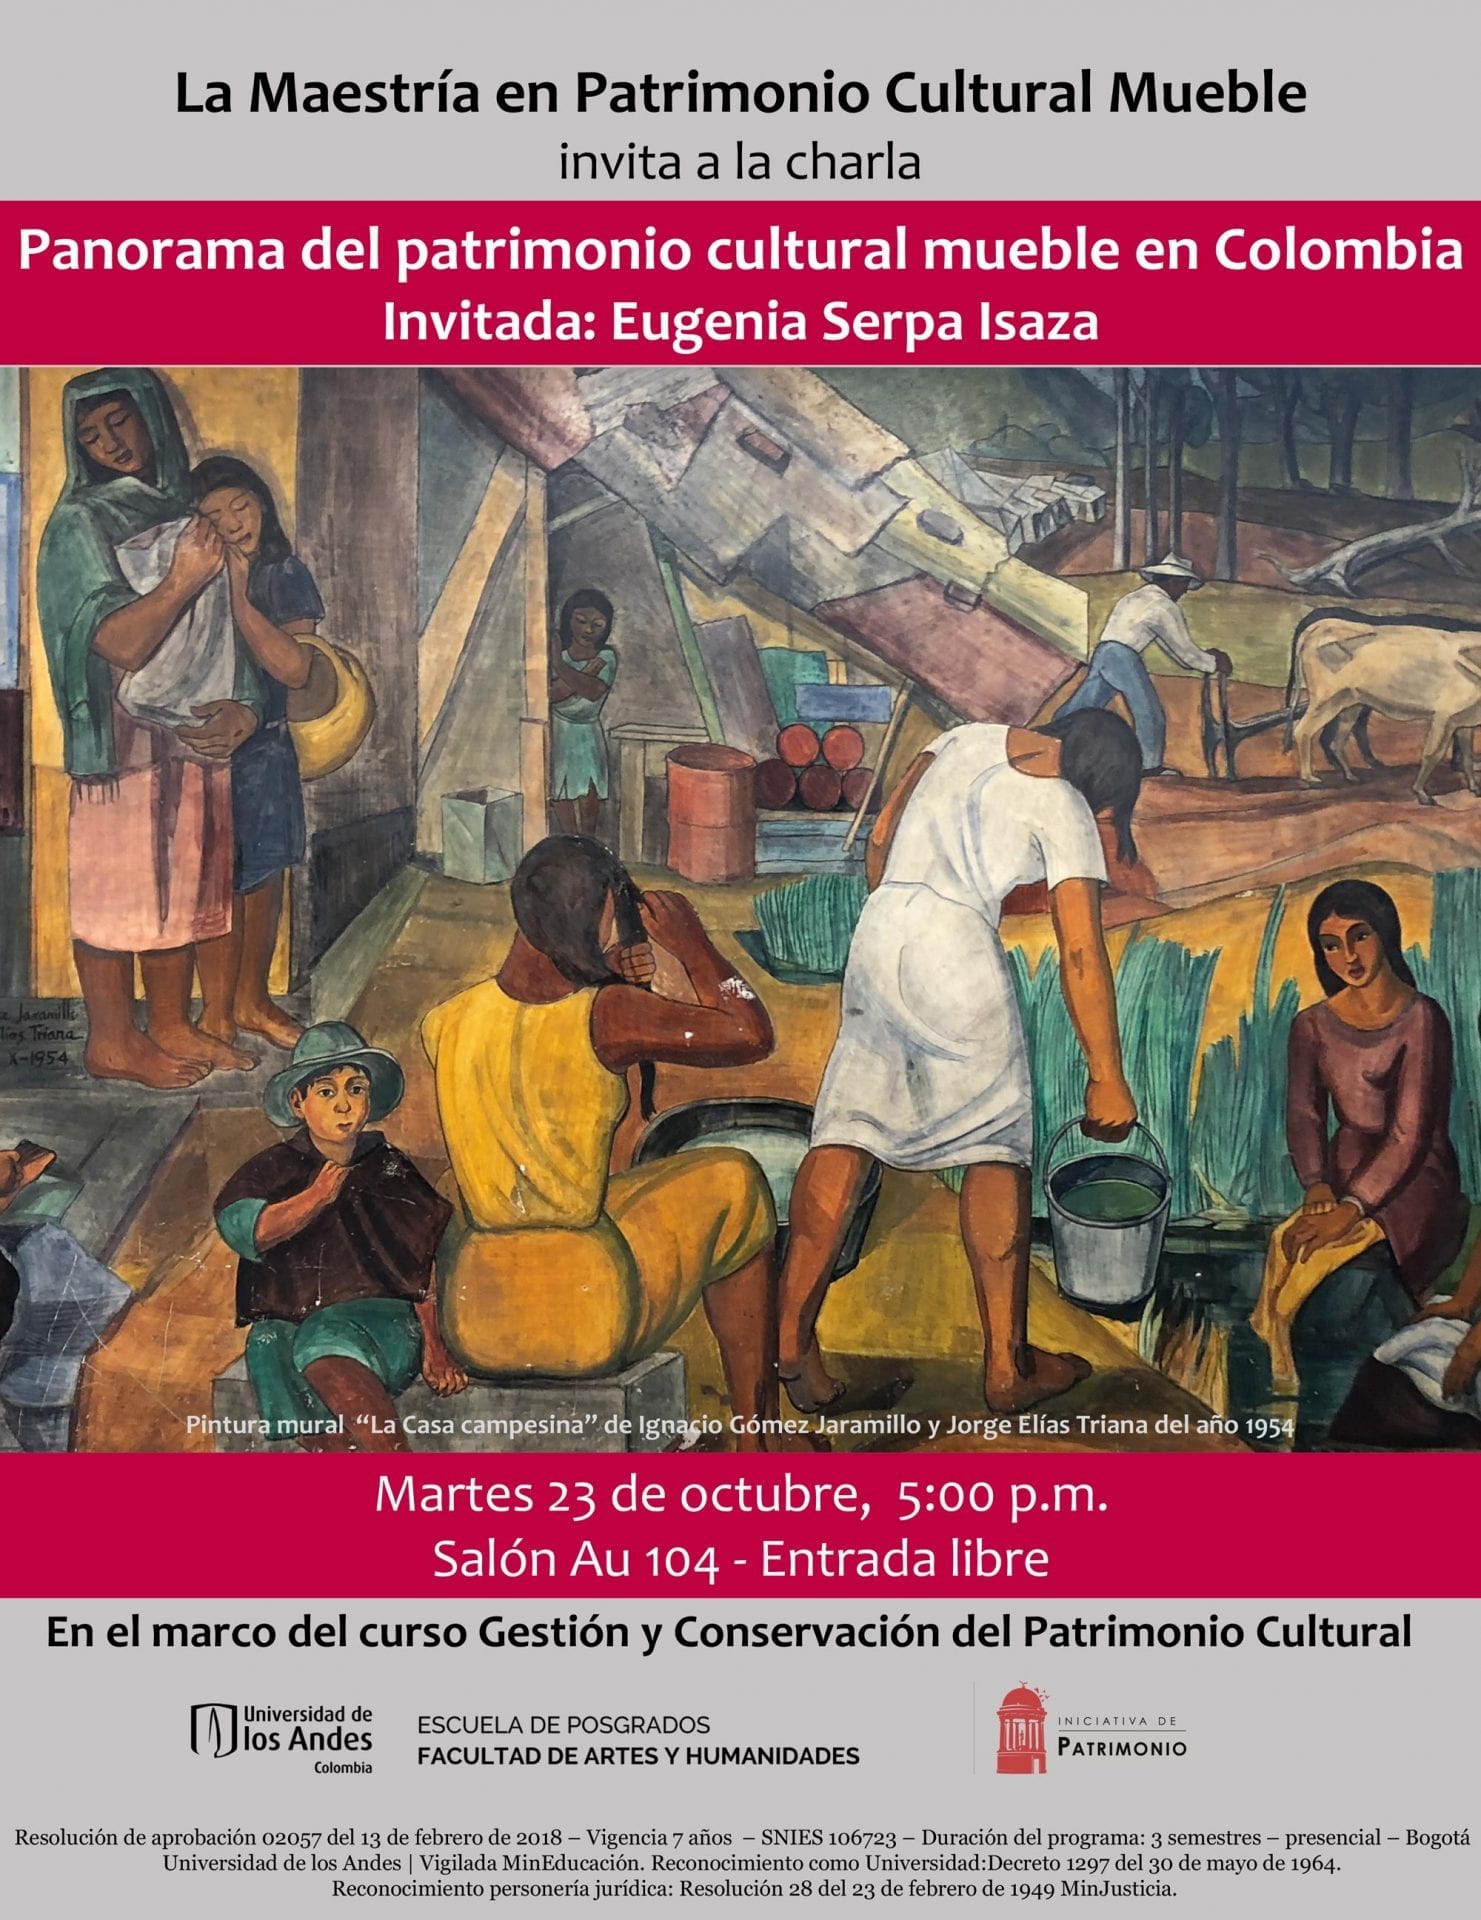 La Maestría en Patrimonio Cultural Mueble invita a la charla Panorama del patrimonio cultural mueble en Colombia.